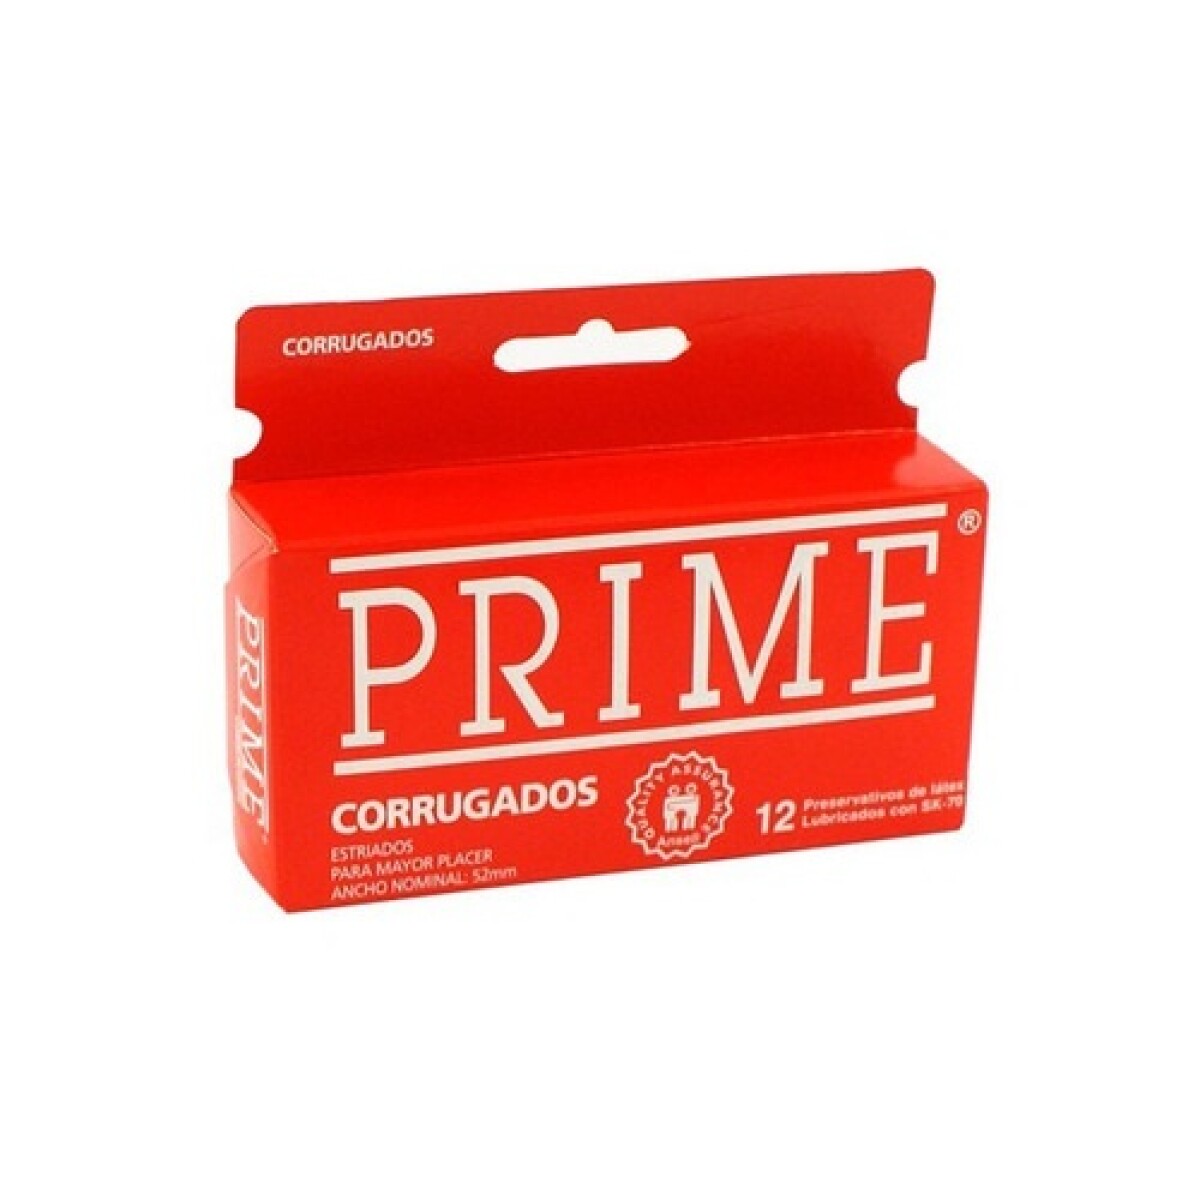 Preservativo Prime Corrugado 12 Uds. 